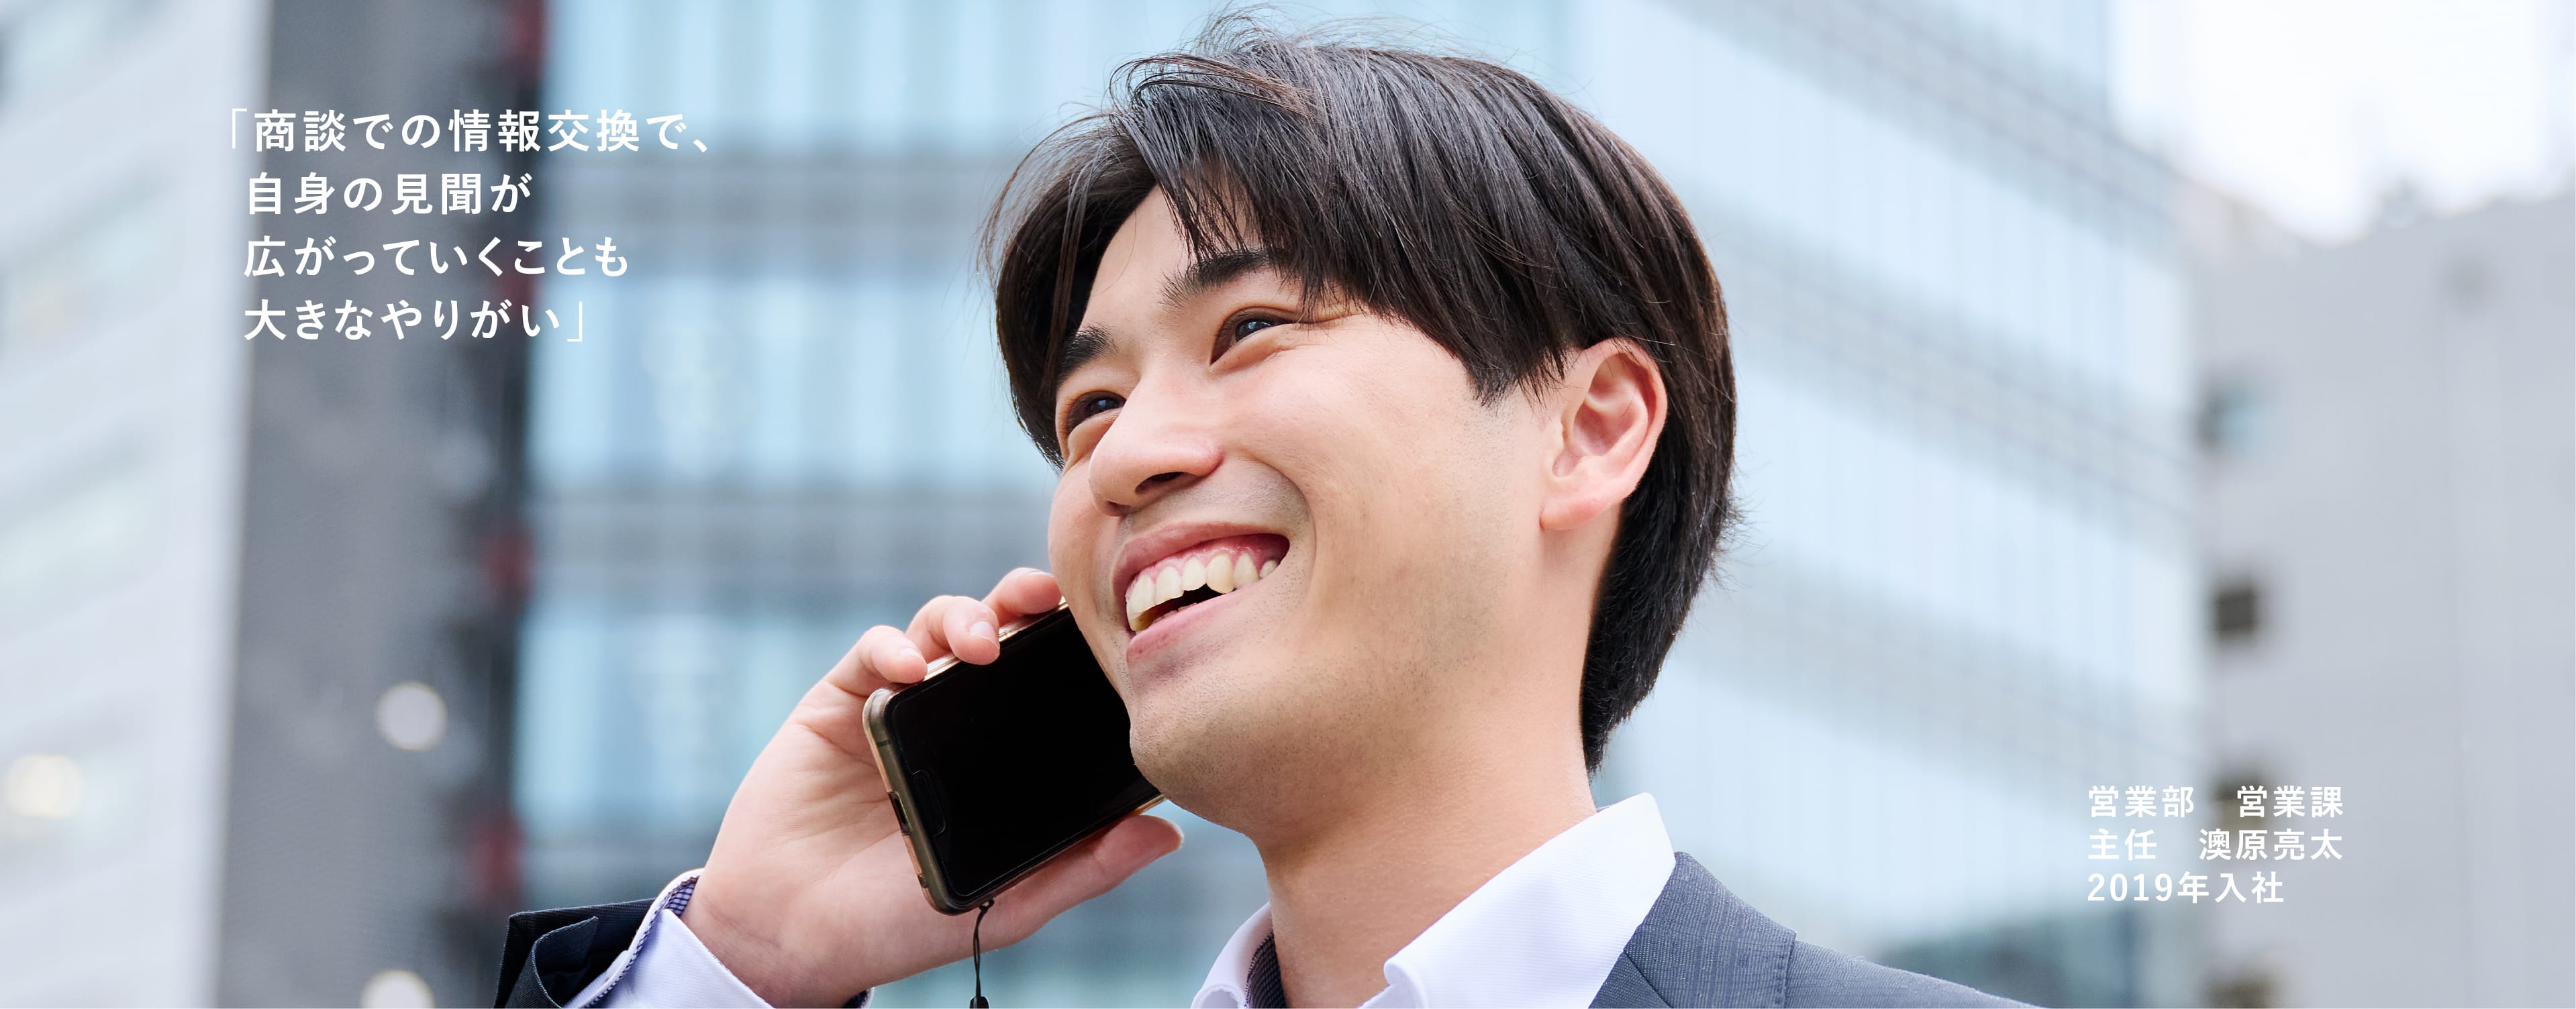 スマホで電話をしている笑顔の男性。営業部:営業課:主任 澳原 亮太 2019年入社